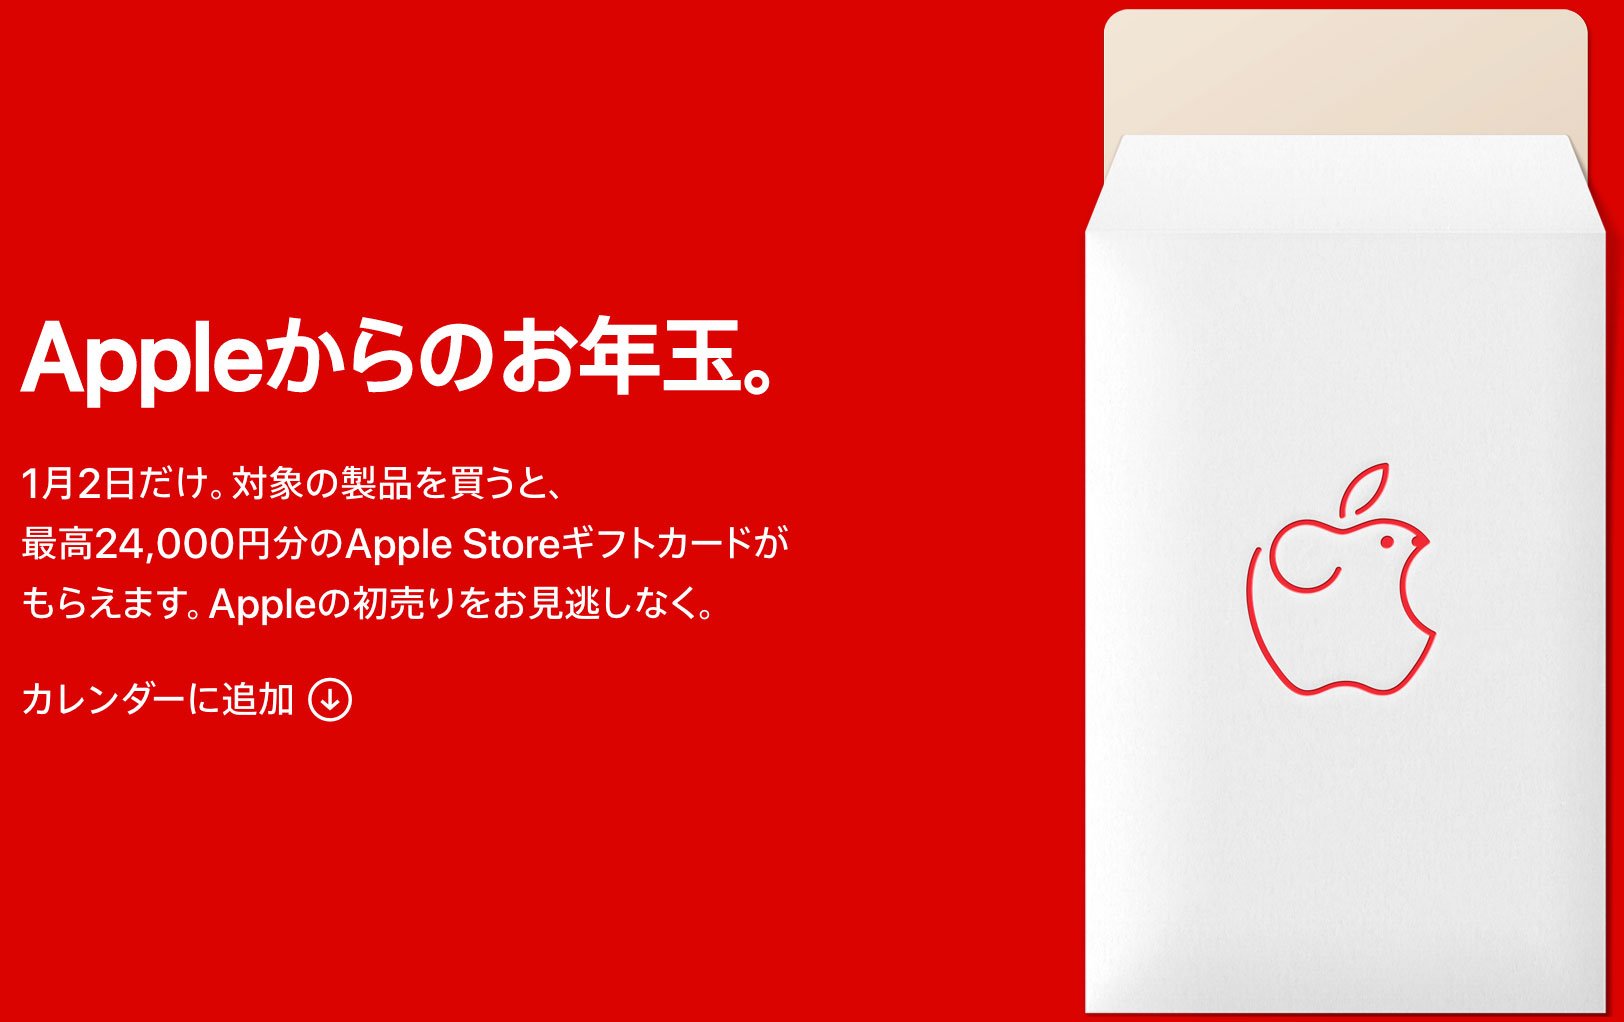 Promoción de tarjeta de regalo en Japón